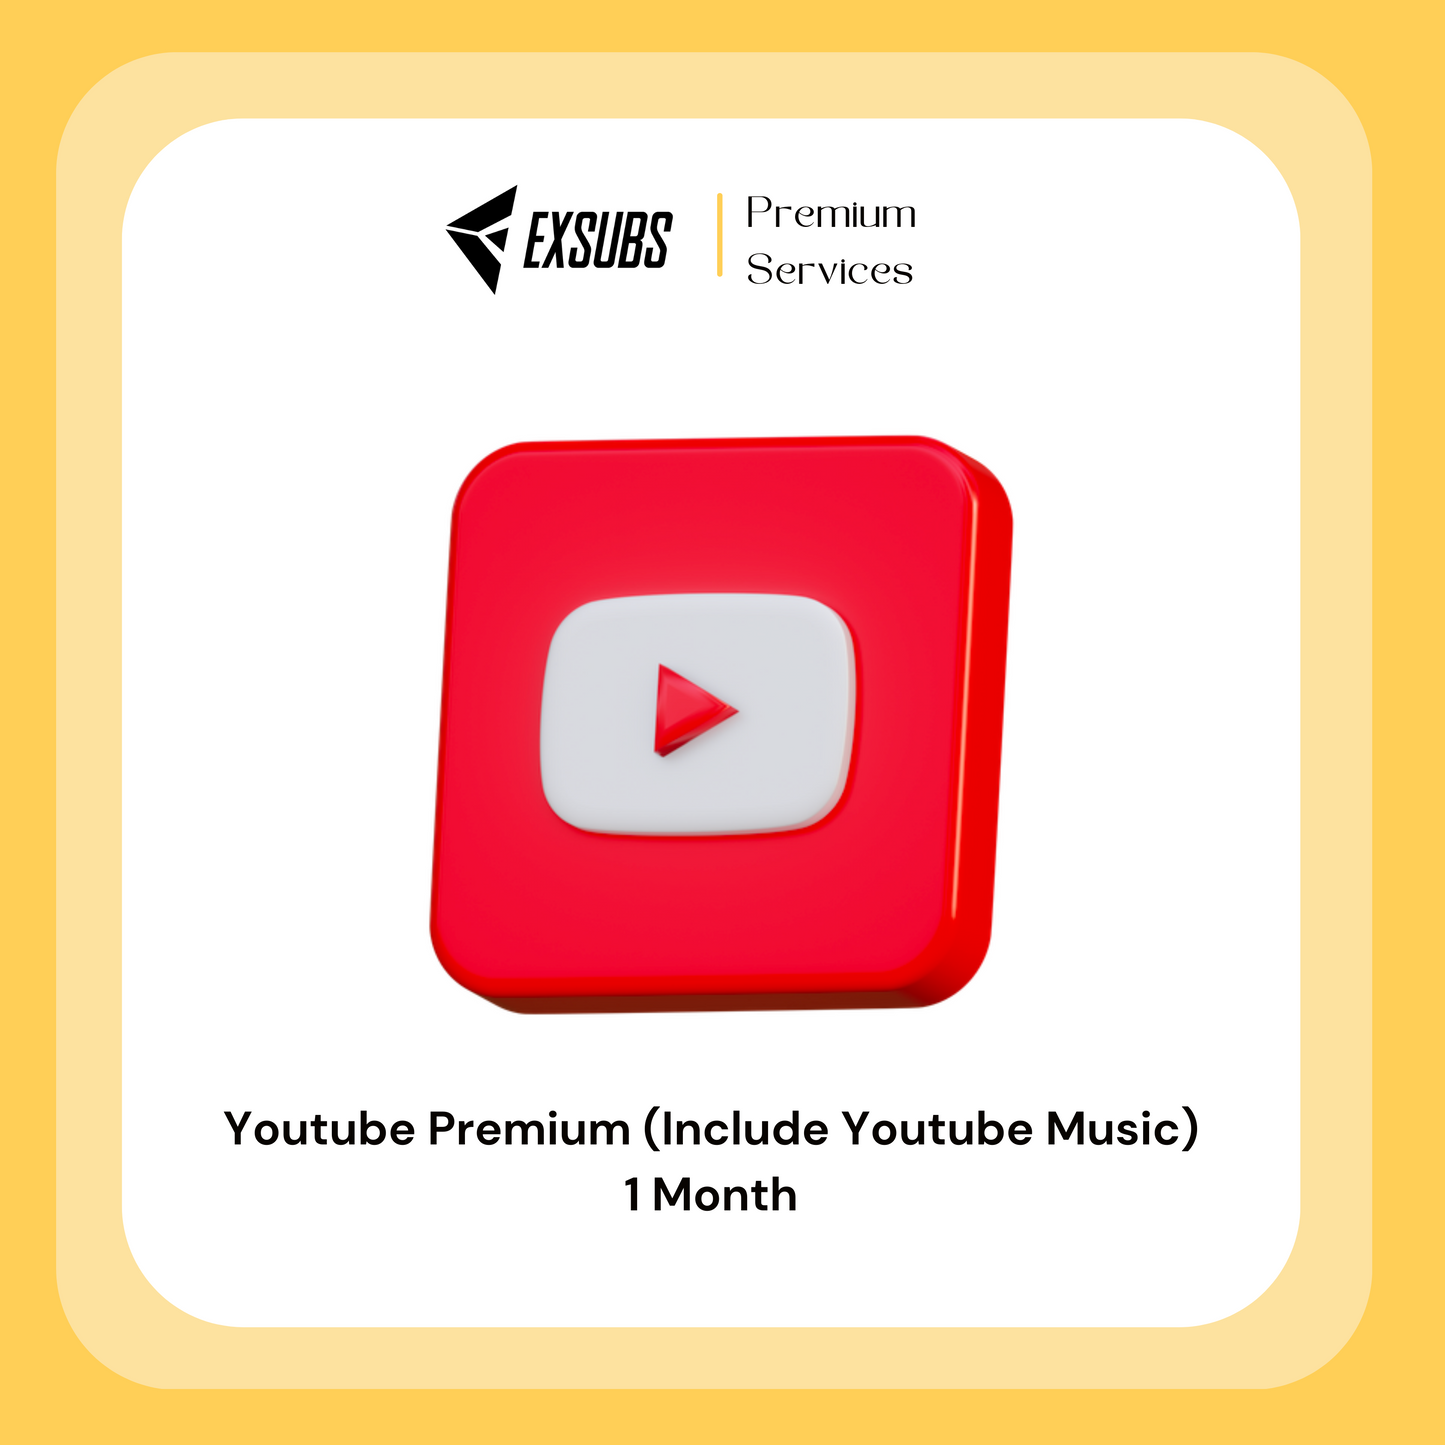 Youtube Premium Member